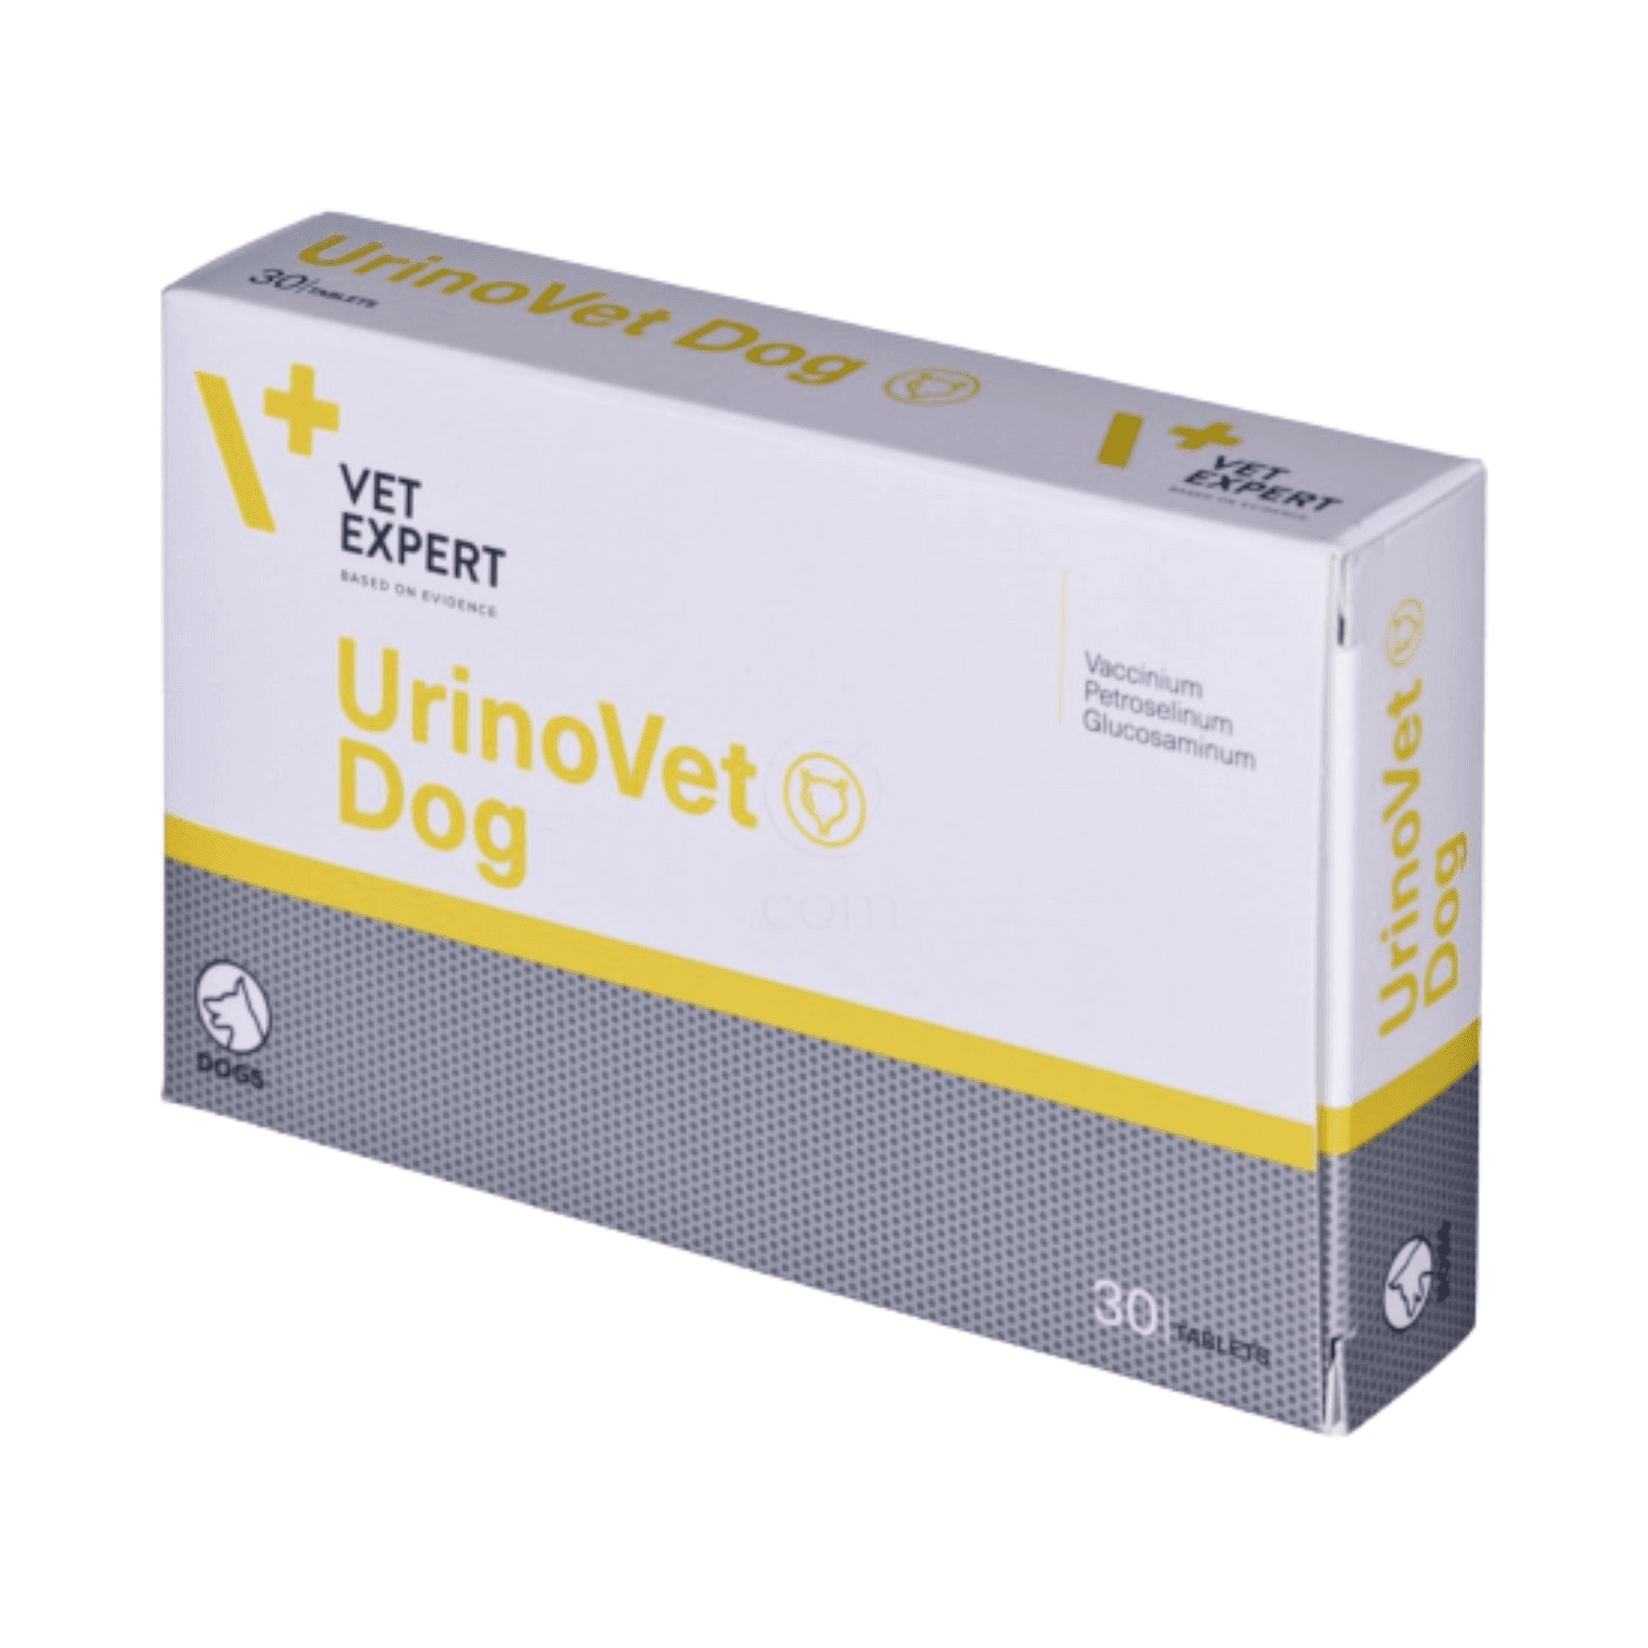 VETEXPERT Tablete za urinarni trakt pasa UrinoVet 30/1